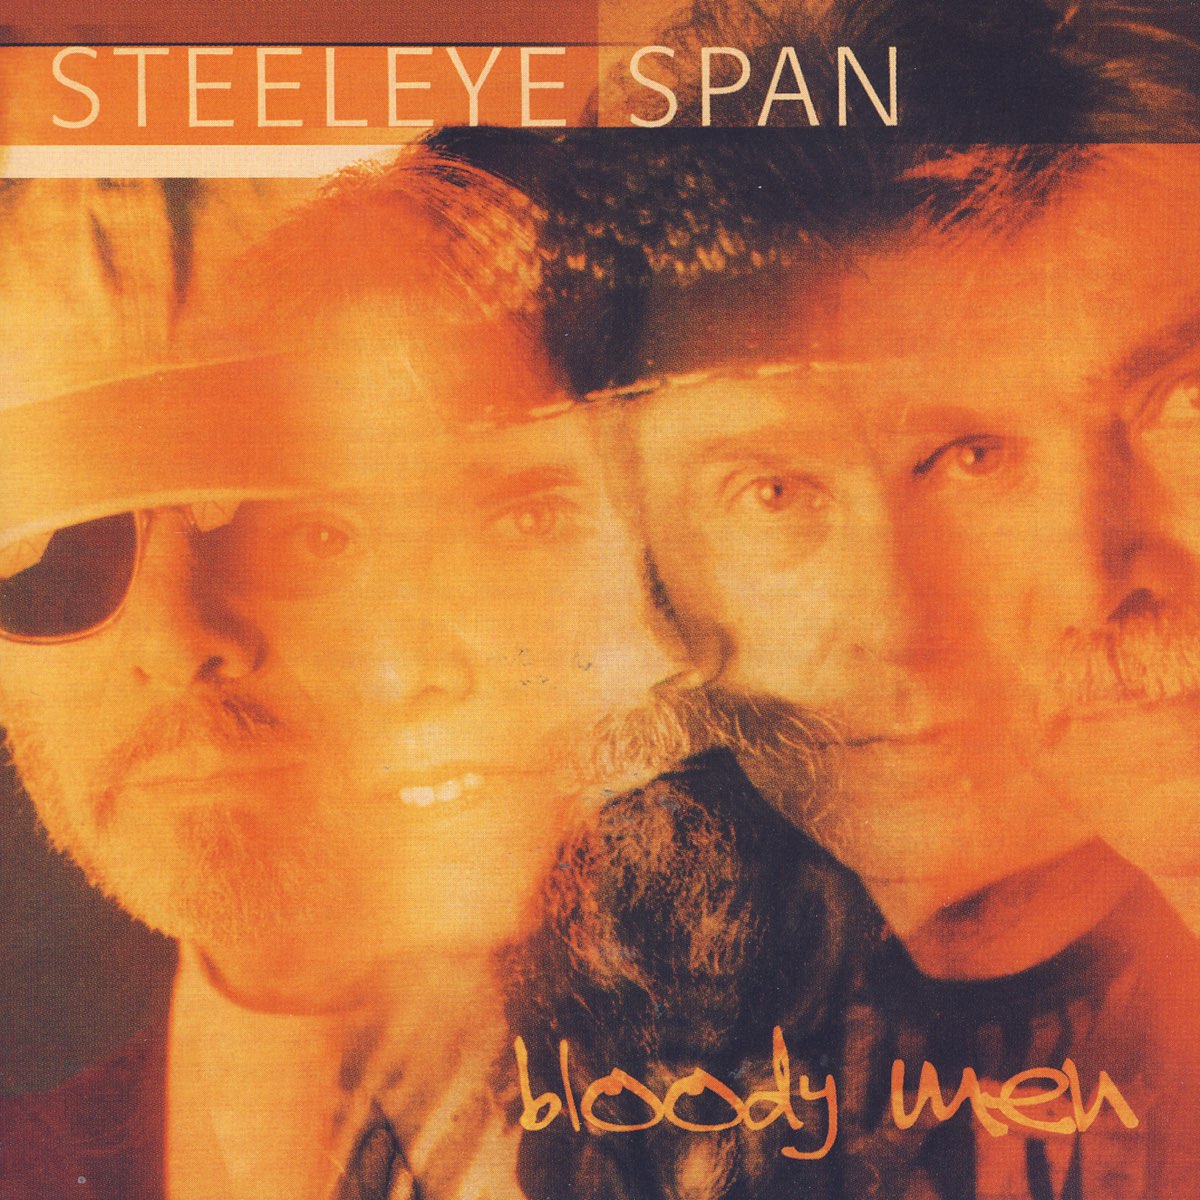 Steeleye span. Steeleye span Live in Nottingham. Steeleye span gettyimages.